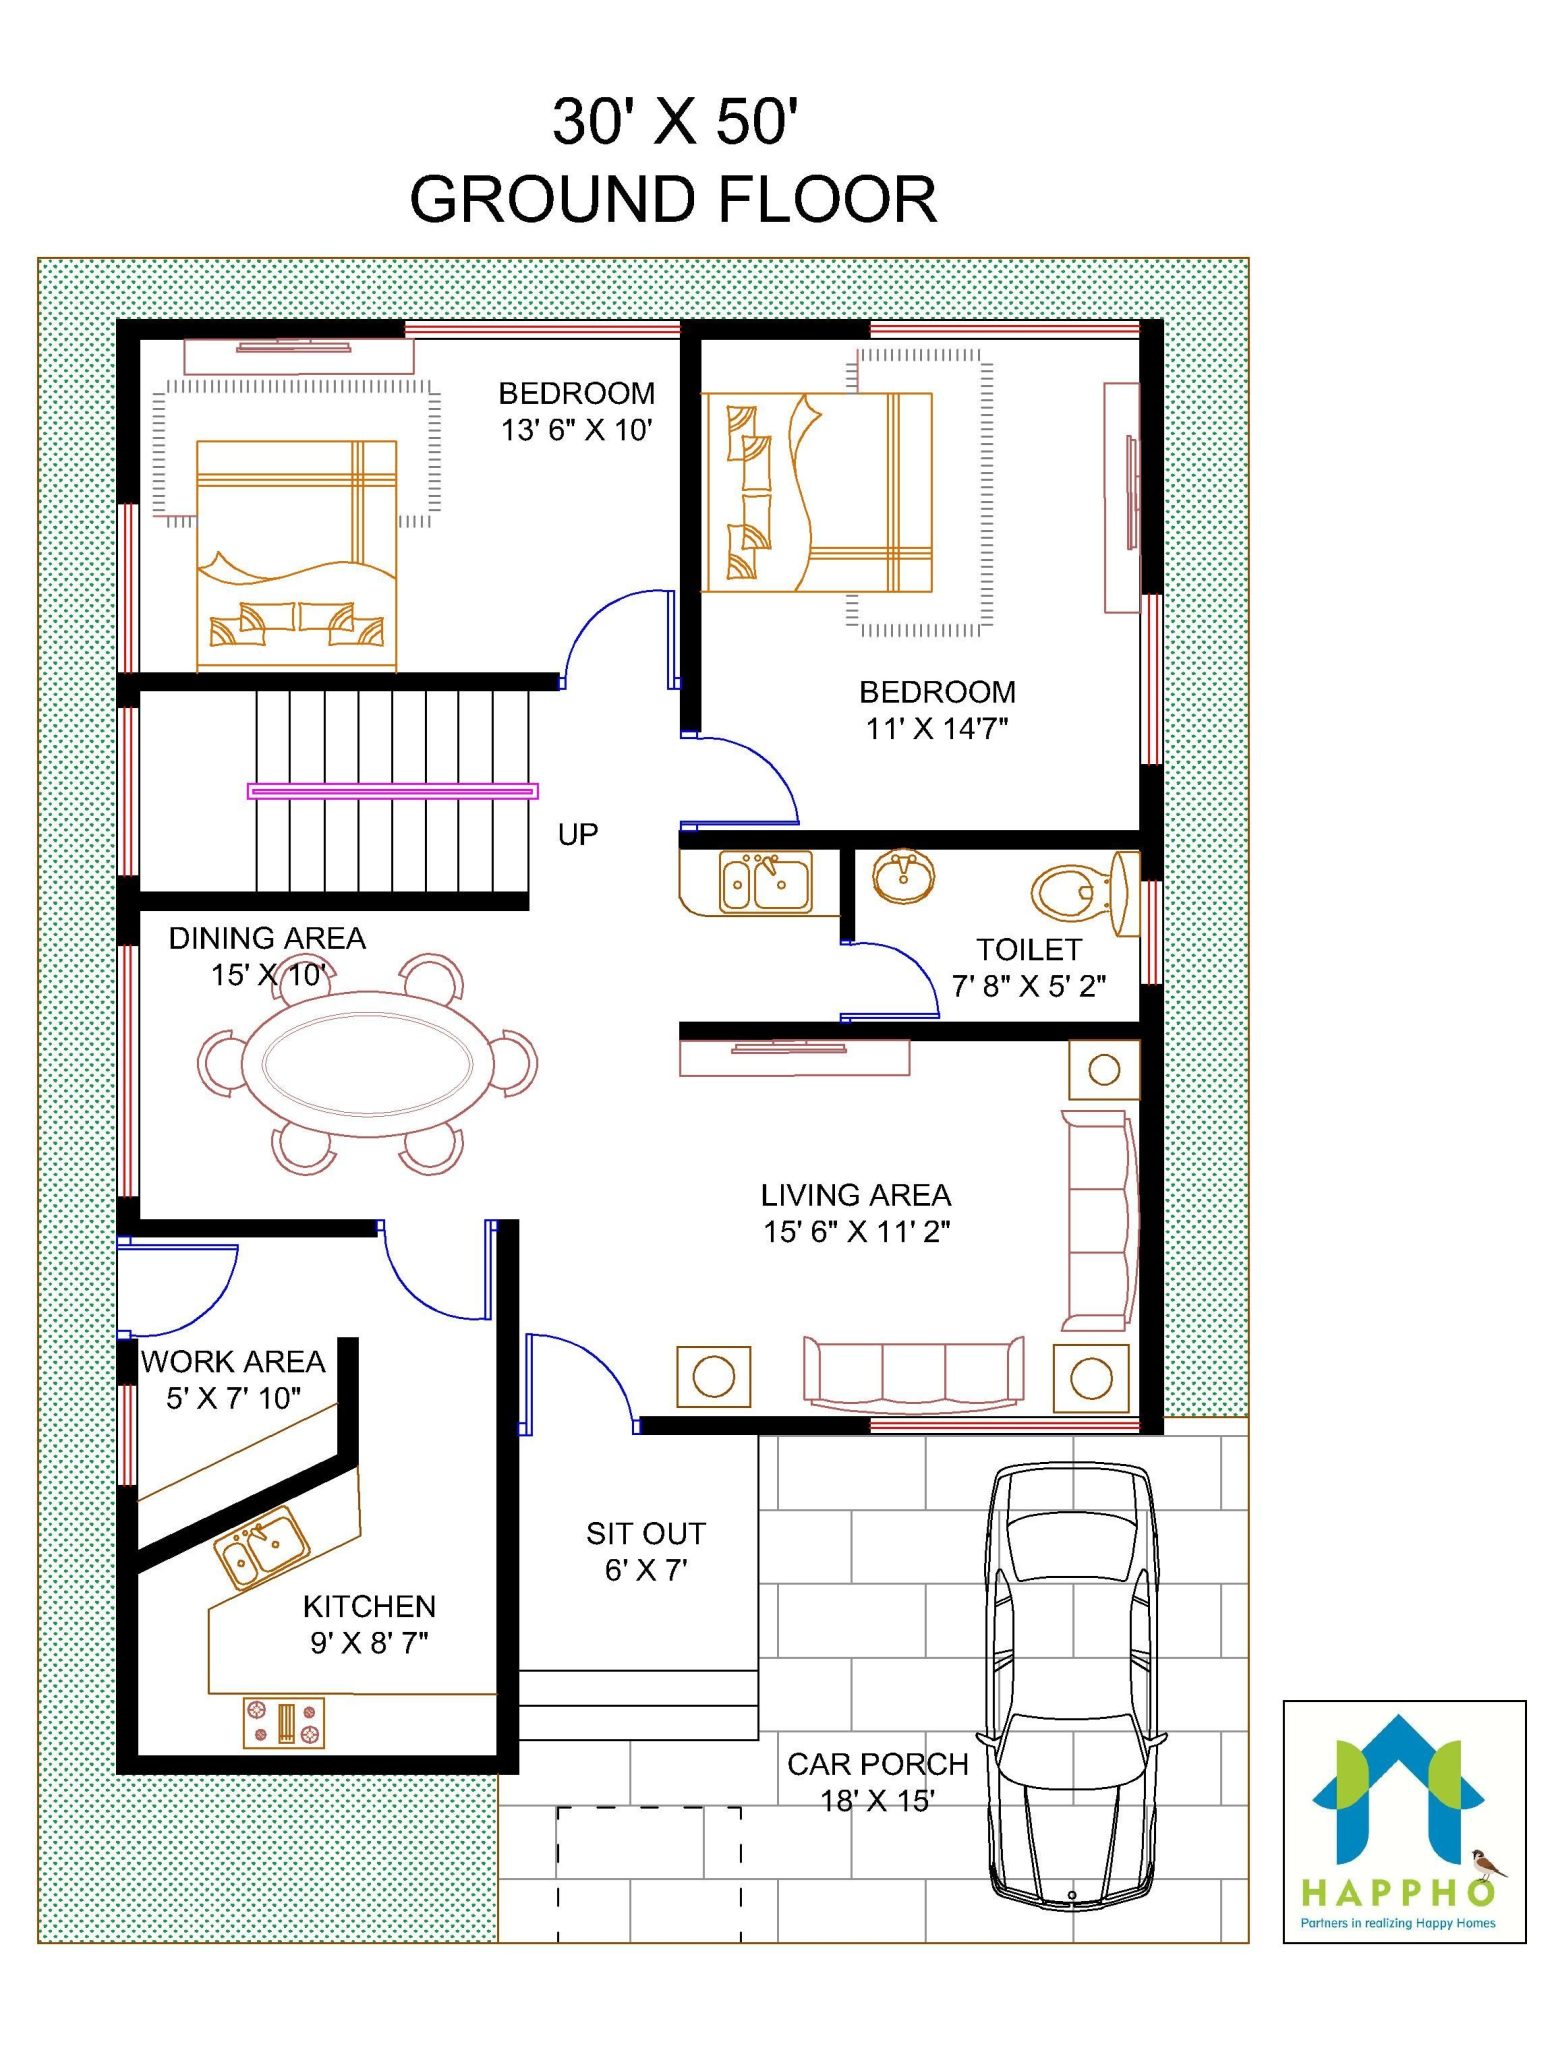 Floor Plan For 30 X 50 Feet Plot 4, Best House Plans For 1500 Square Feet